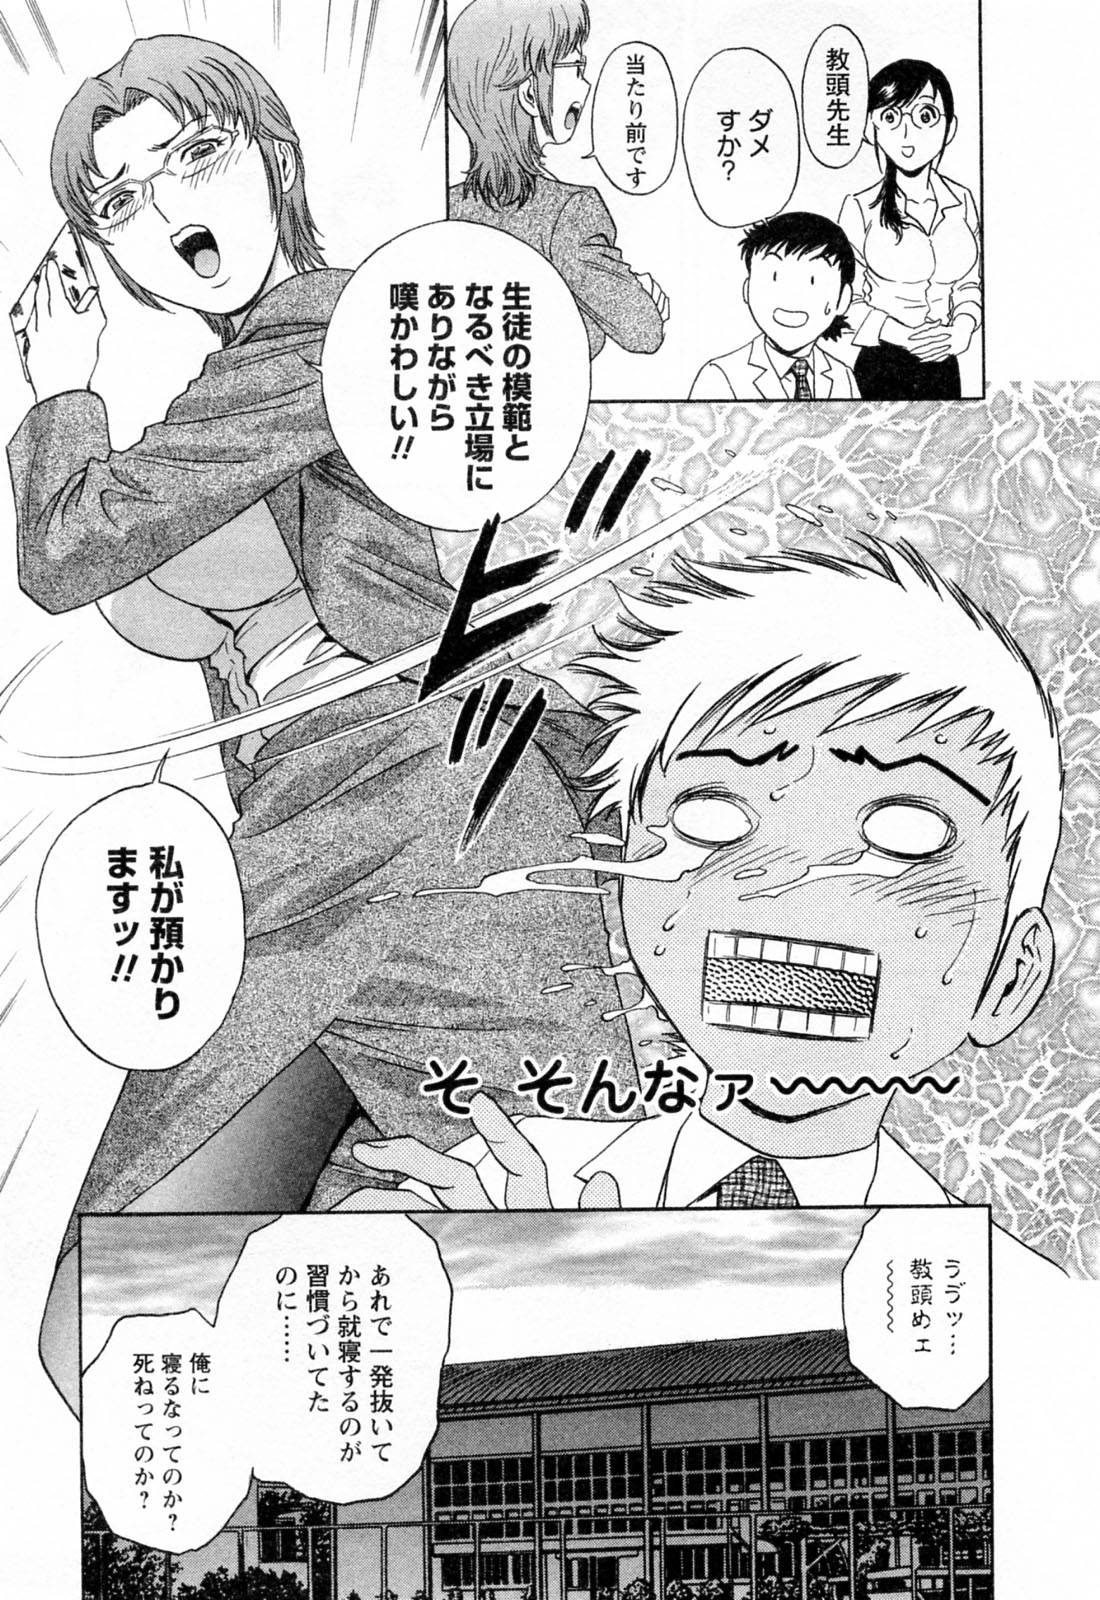 [Hidemaru] Mo-Retsu! Boin Sensei (Boing Boing Teacher) Vol.4 page 15 full